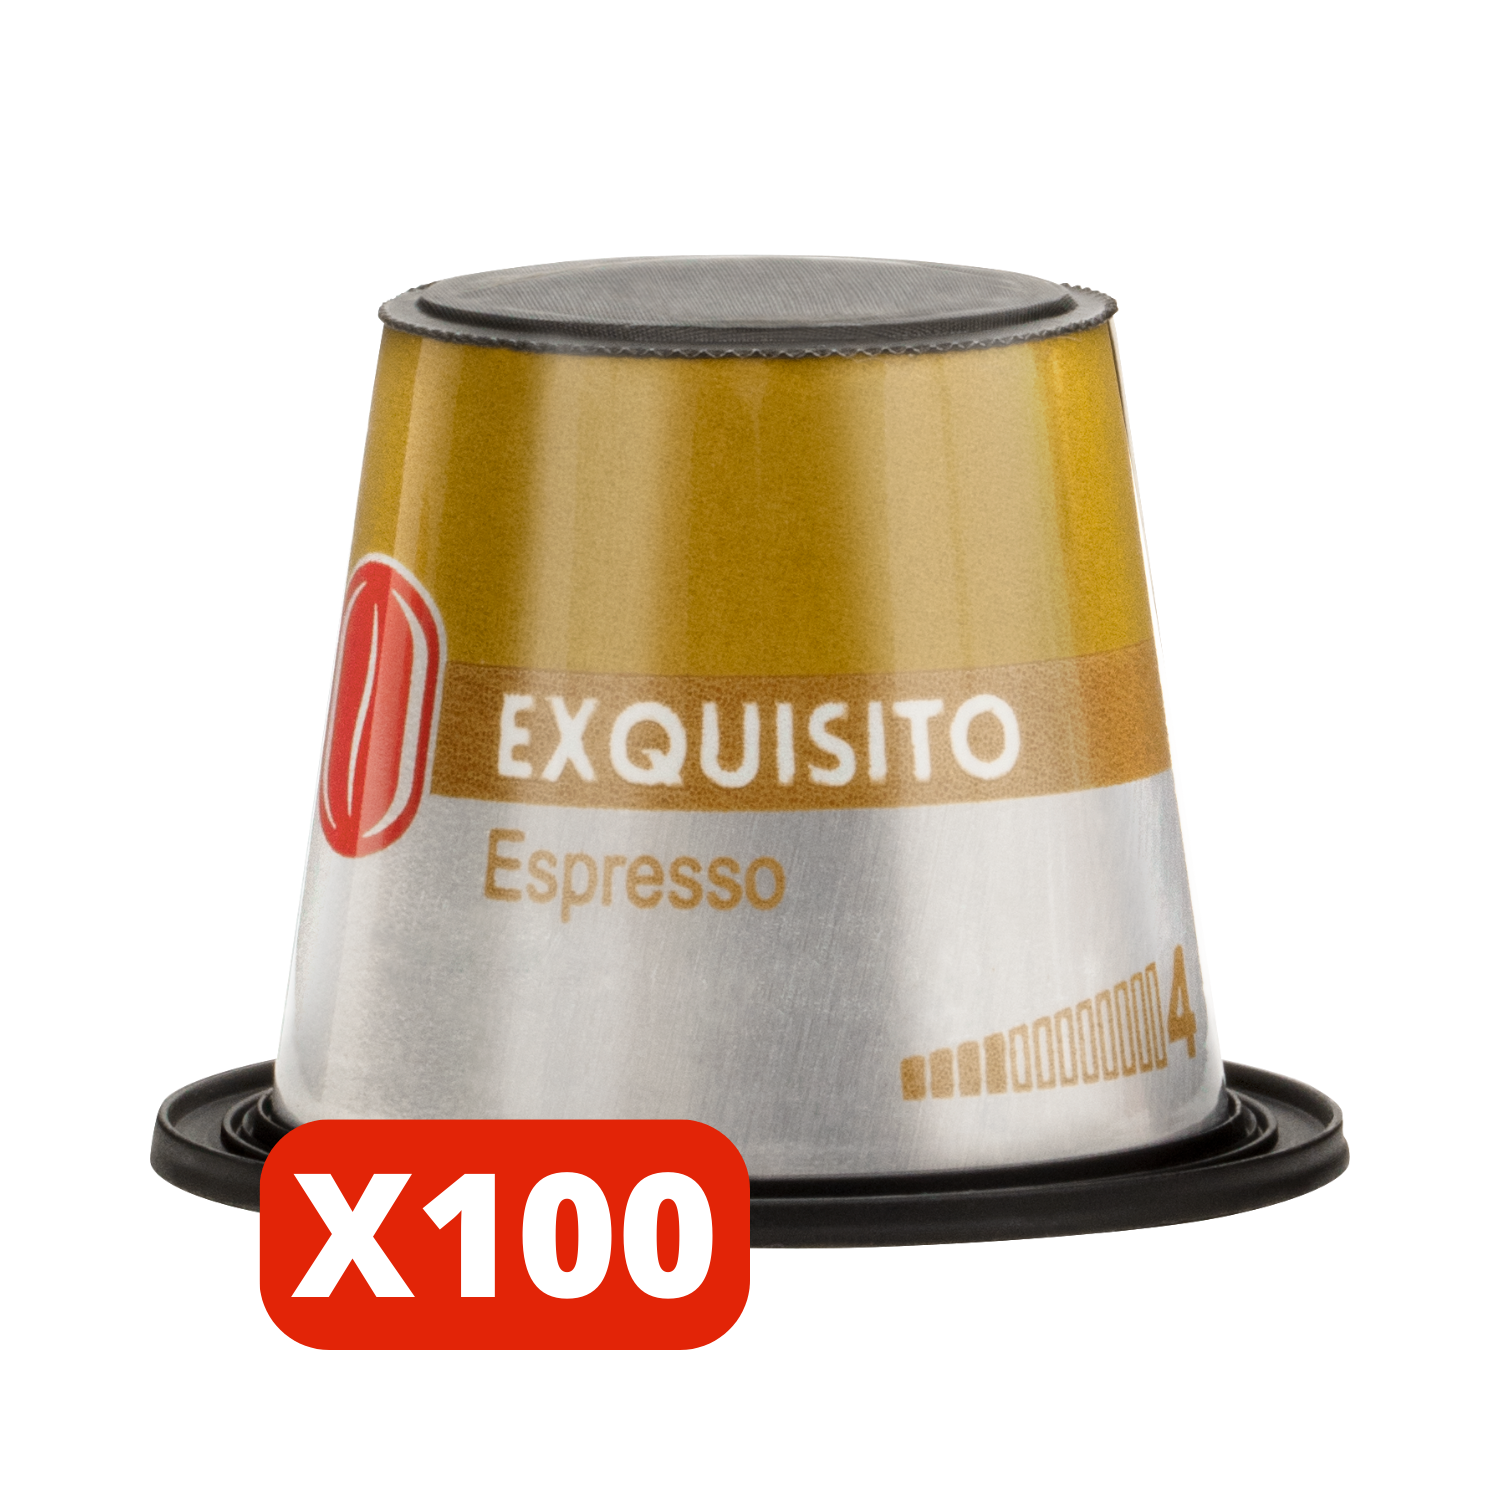 Exquisito - Espresso